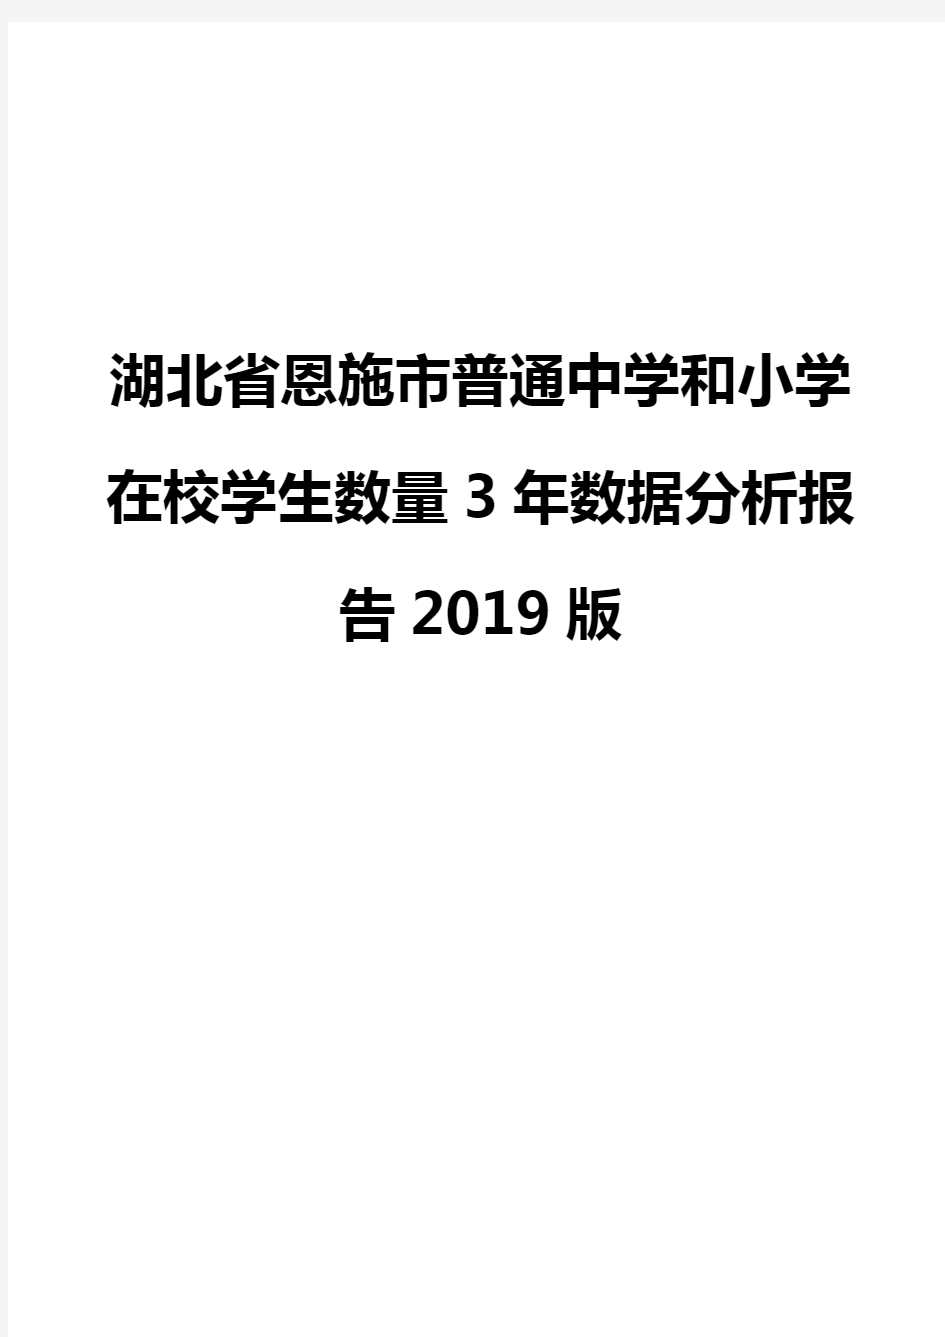 湖北省恩施市普通中学和小学在校学生数量3年数据分析报告2019版